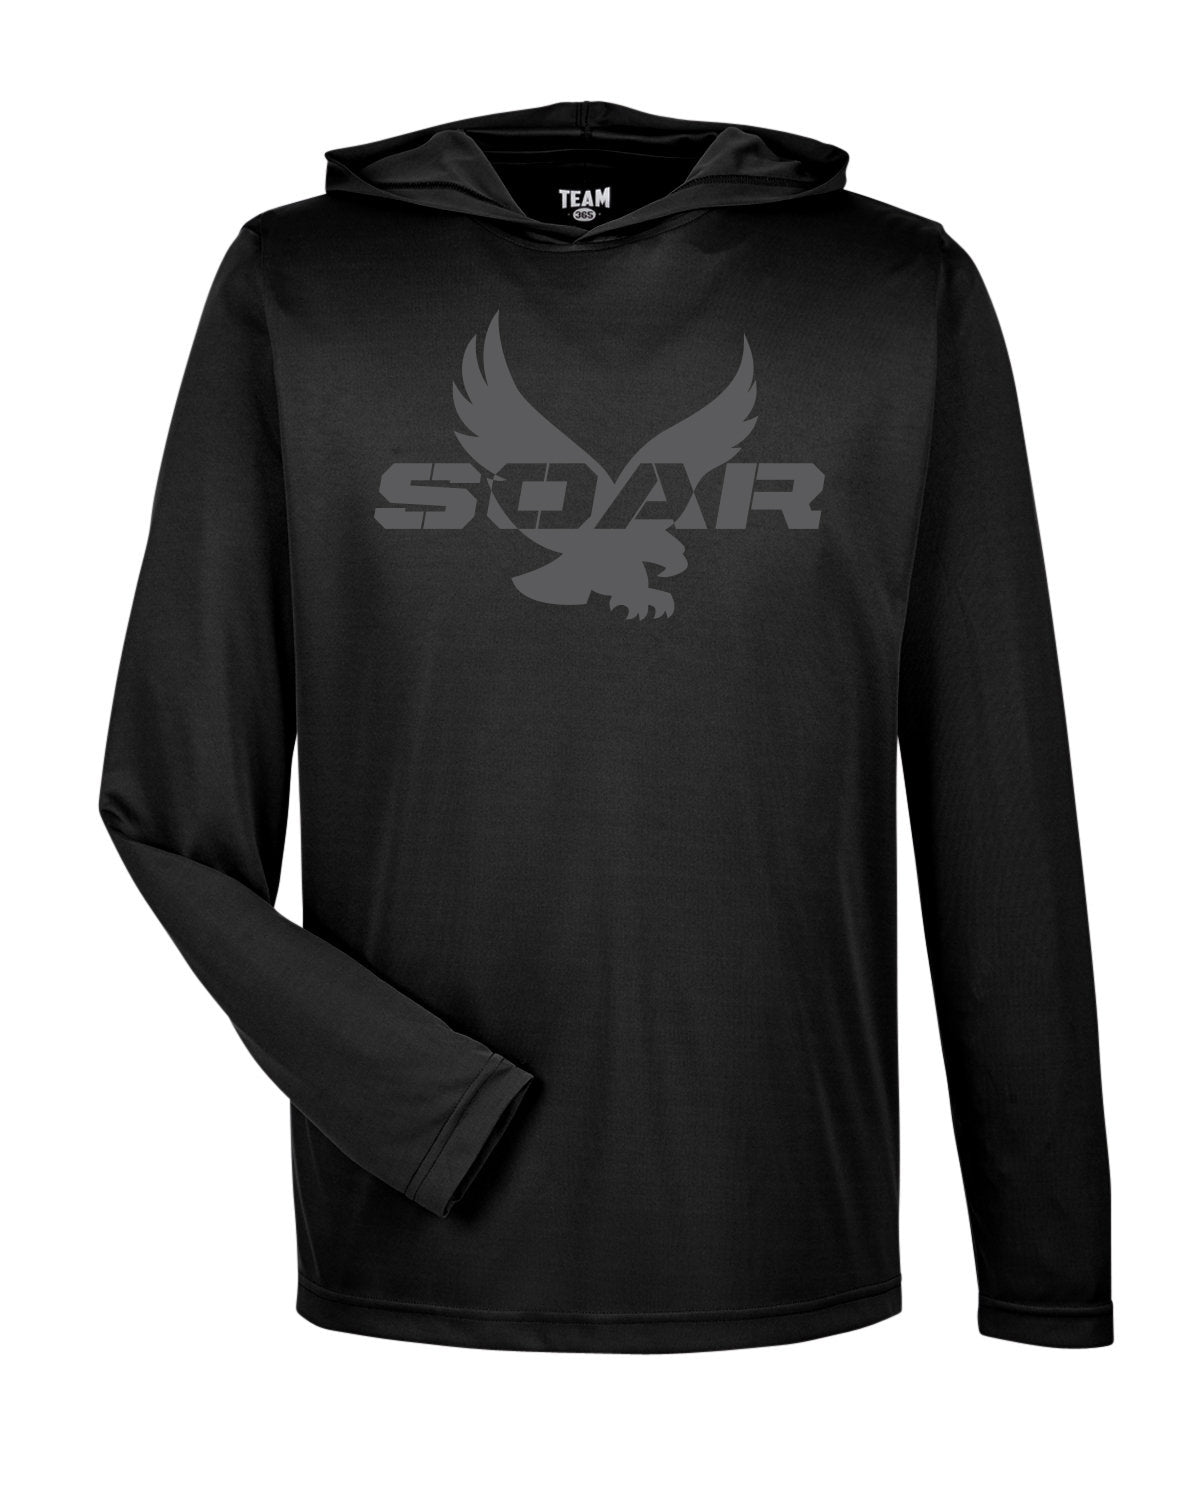 TT41 - SOAR SPIRIT - Men's Team 365 Zone Performance Hooded TShirt